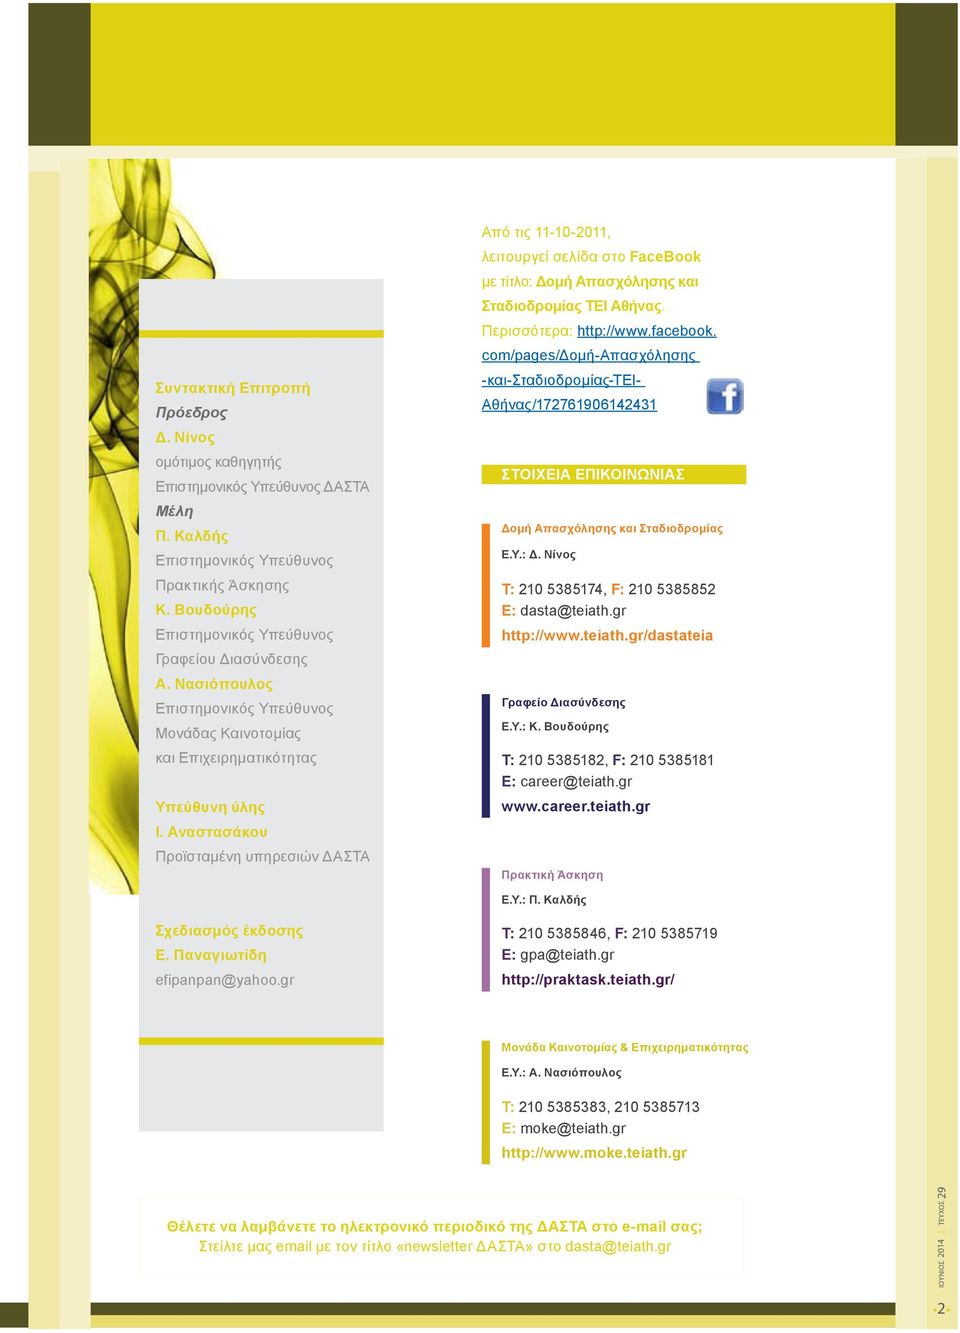 Αναστασάκου Προϊσταμένη υπηρεσιών ΔΑΣΤΑ Από τις 11-10-2011, λειτουργεί σελίδα στο FaceBook με τίτλο: Δομή Απασχόλησης και Σταδιοδρομίας ΤΕΙ Αθήνας. Περισσότερα: http://www.facebook.